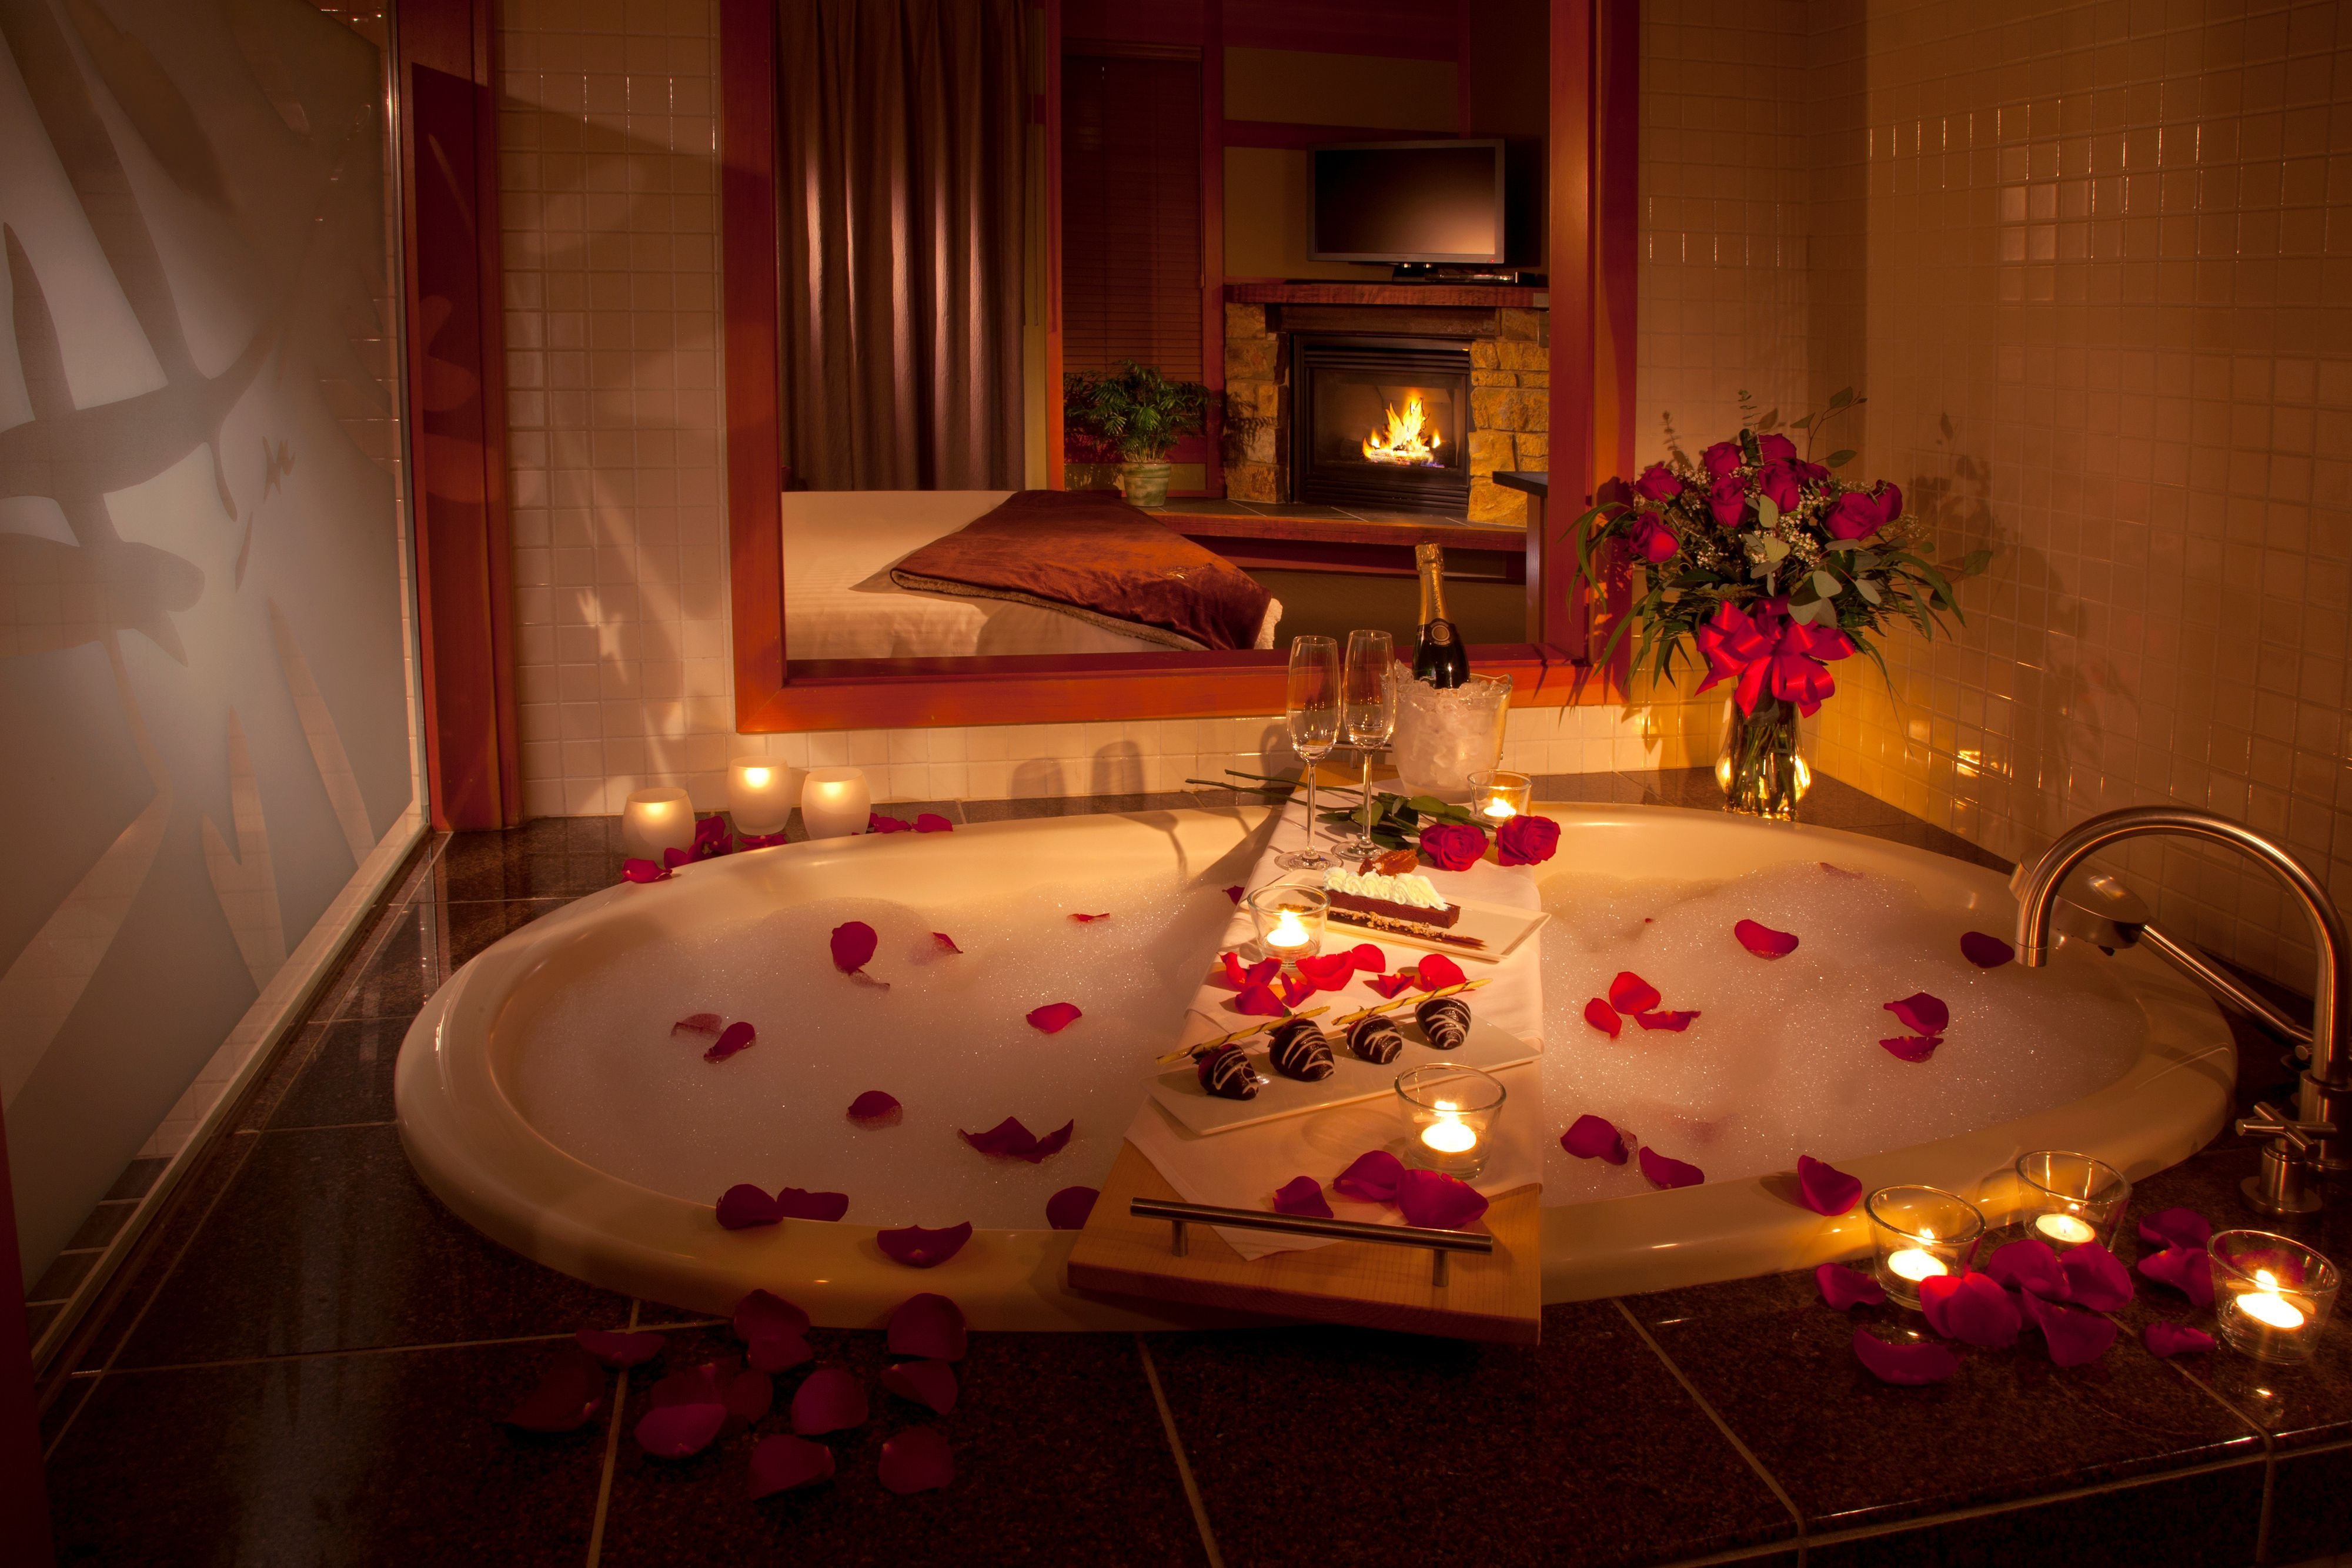 Более романтично. Романтическая комната. Комната для романтического вечера. Ванна с лепестками роз и свечами. Романтический ужин в комнате.